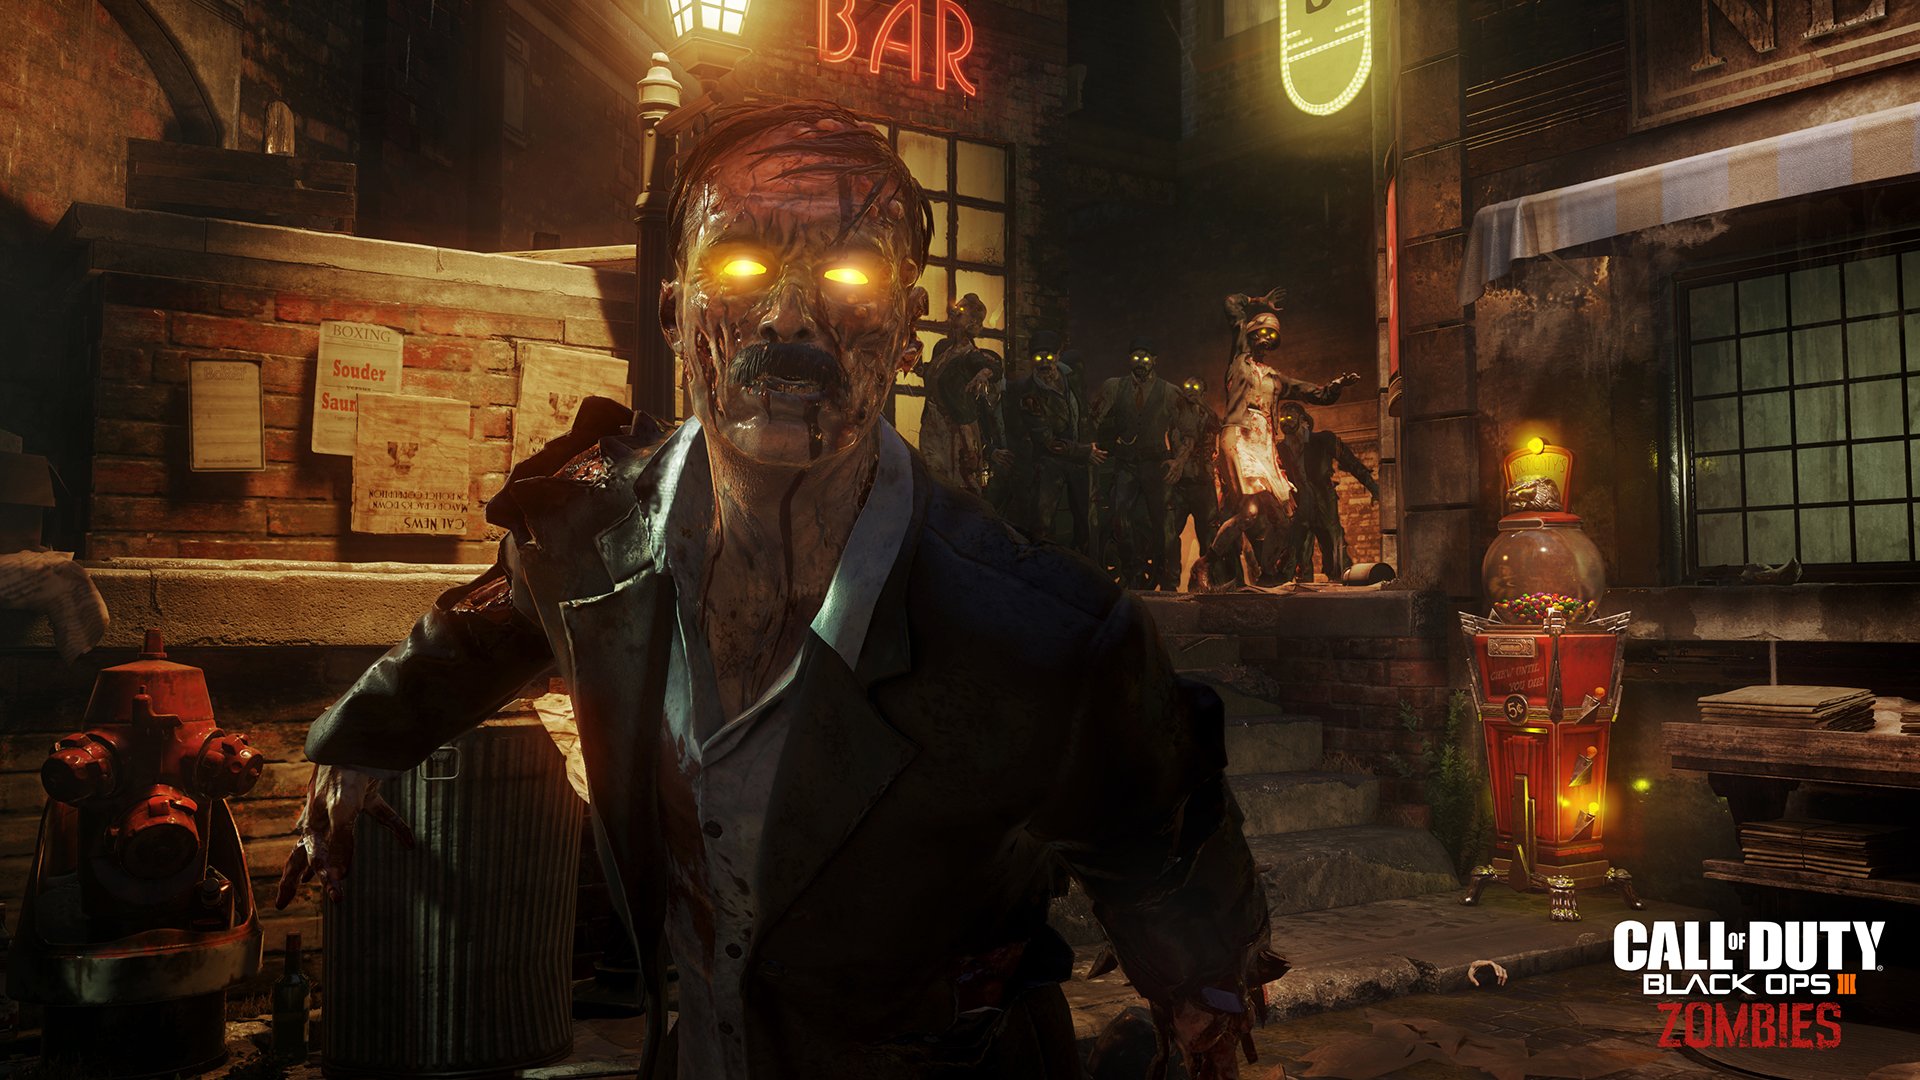 Vídeo apresenta os personagens do modo Zombies de Call of Duty: Black Ops 3  - NerdBunker